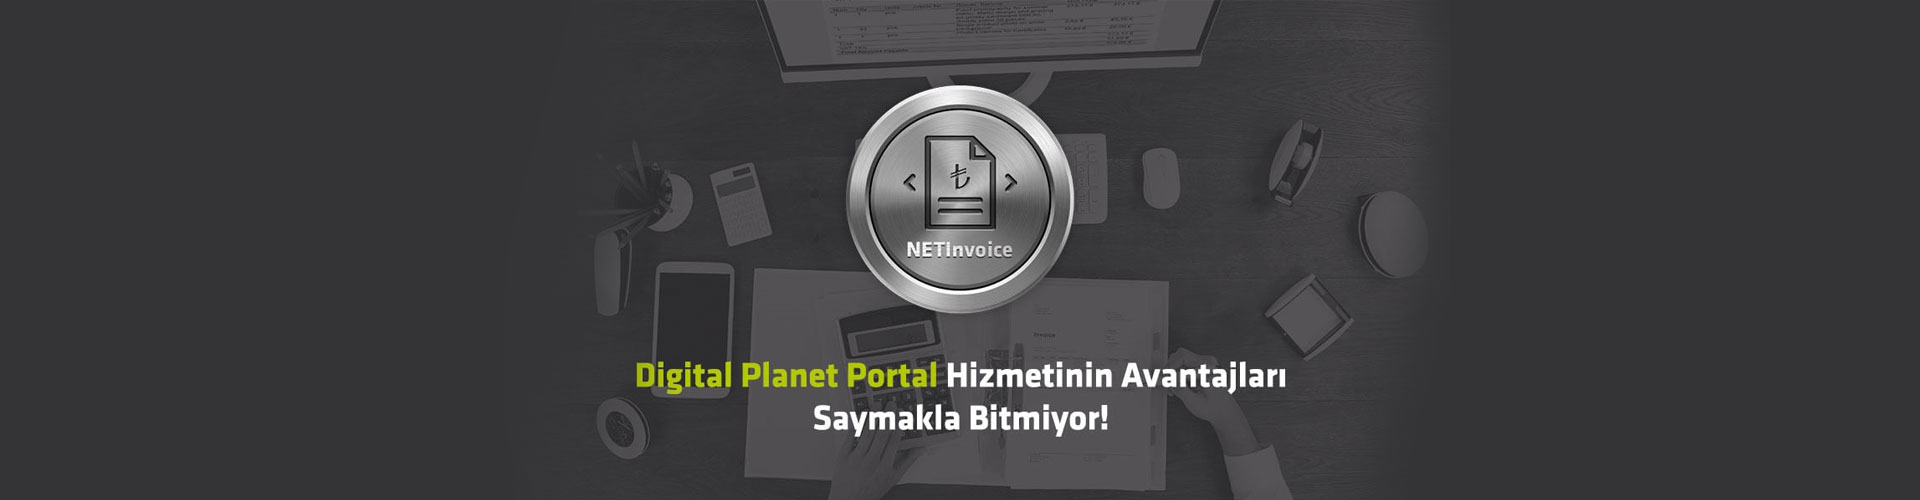 Digital Planet Portal Hizmetinin Avantajları Saymakla Bitmiyor!